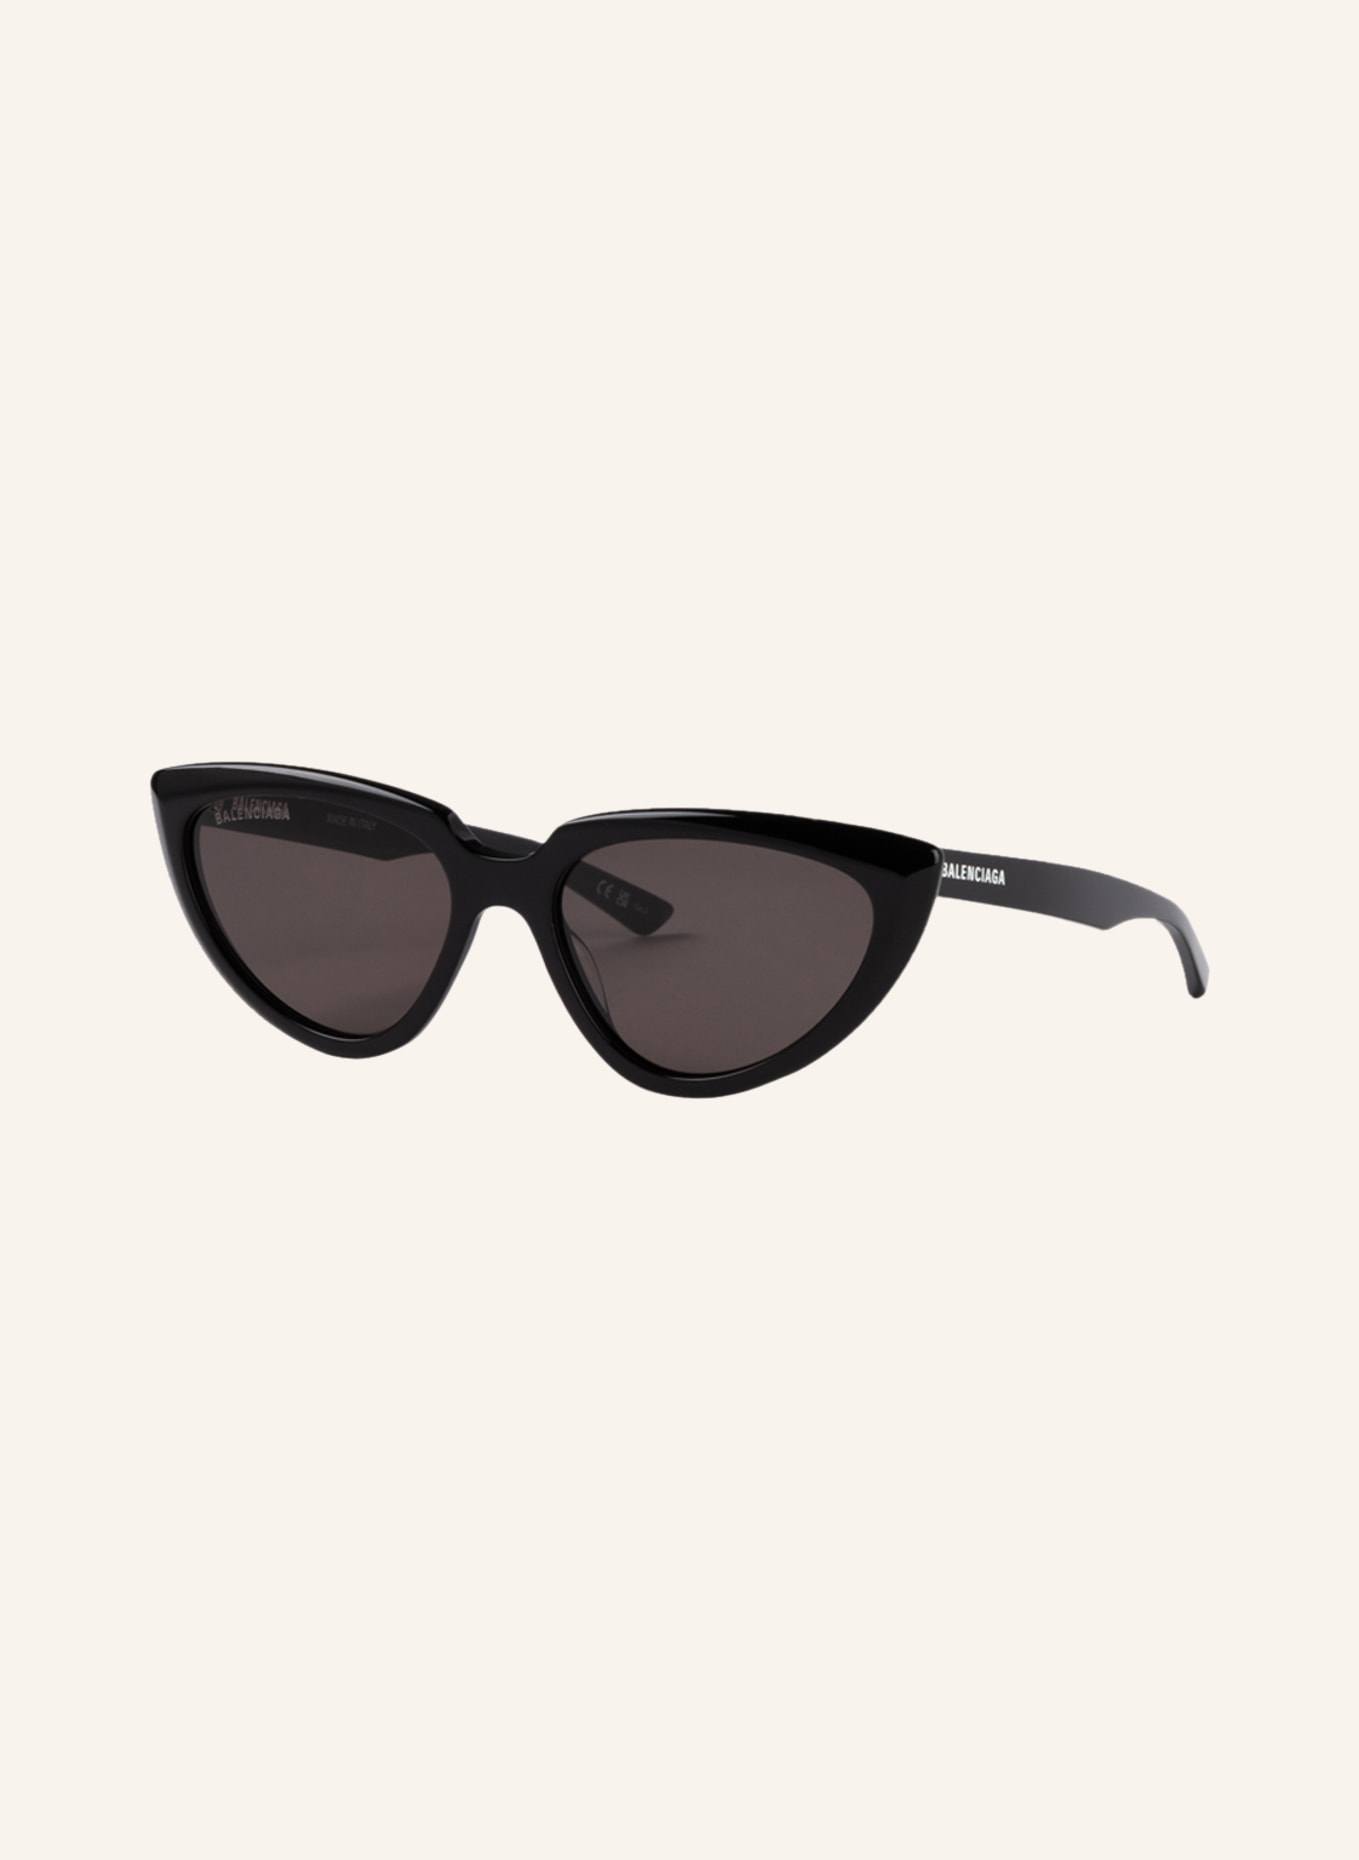 BALENCIAGA Sunglasses BB0182S, Color: 1100L1 - BLACK/DARK GRAY (Image 1)